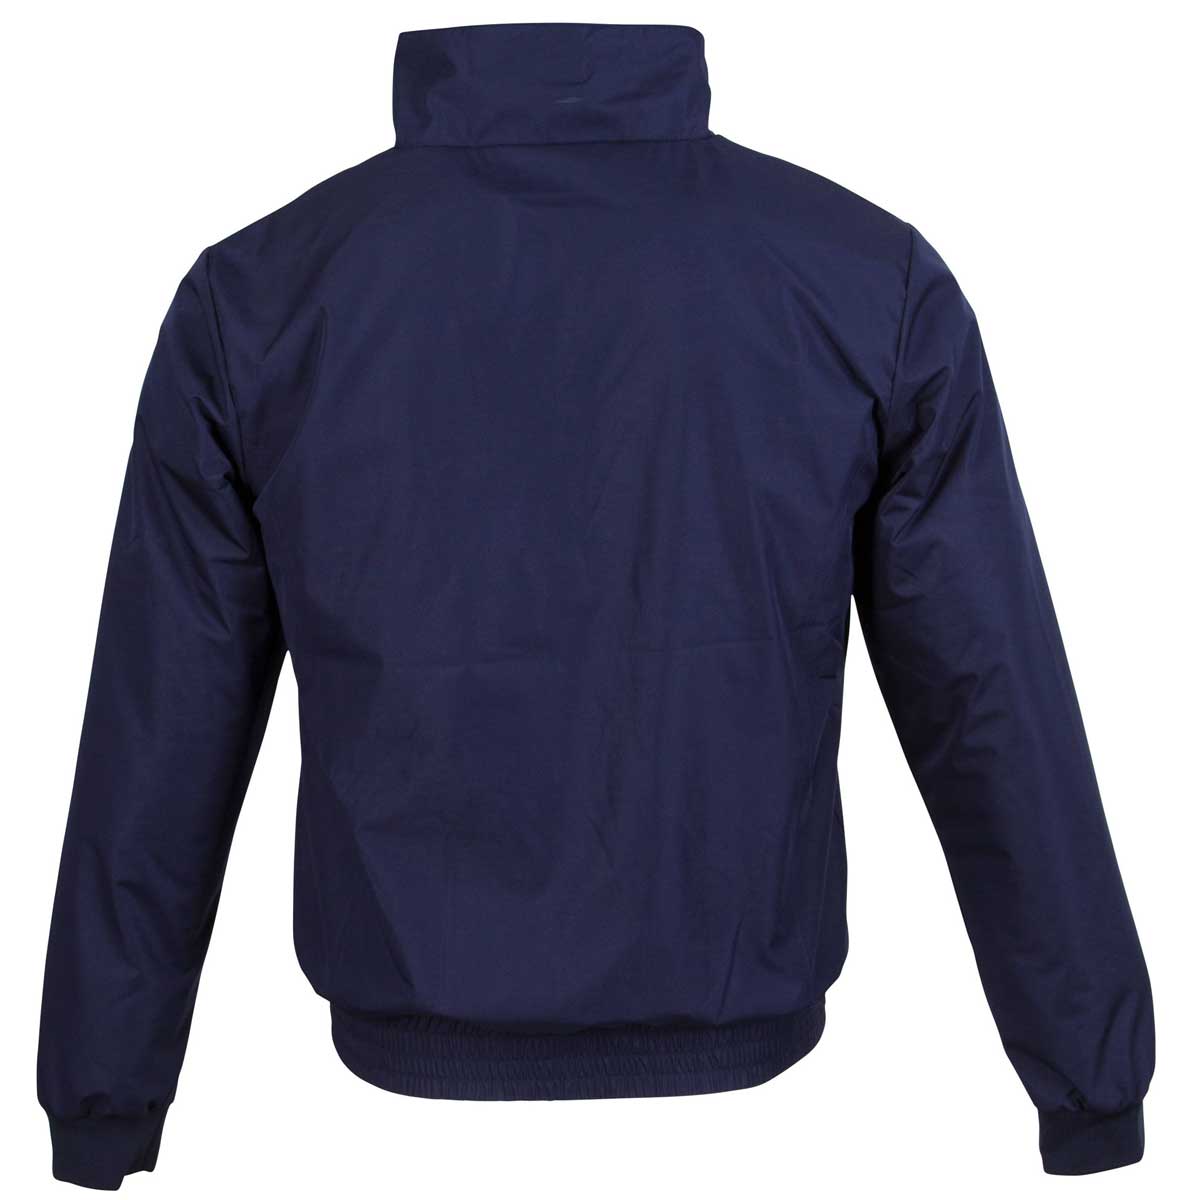 Covalliero jachetă blouson pentru bărbați S albastru marin